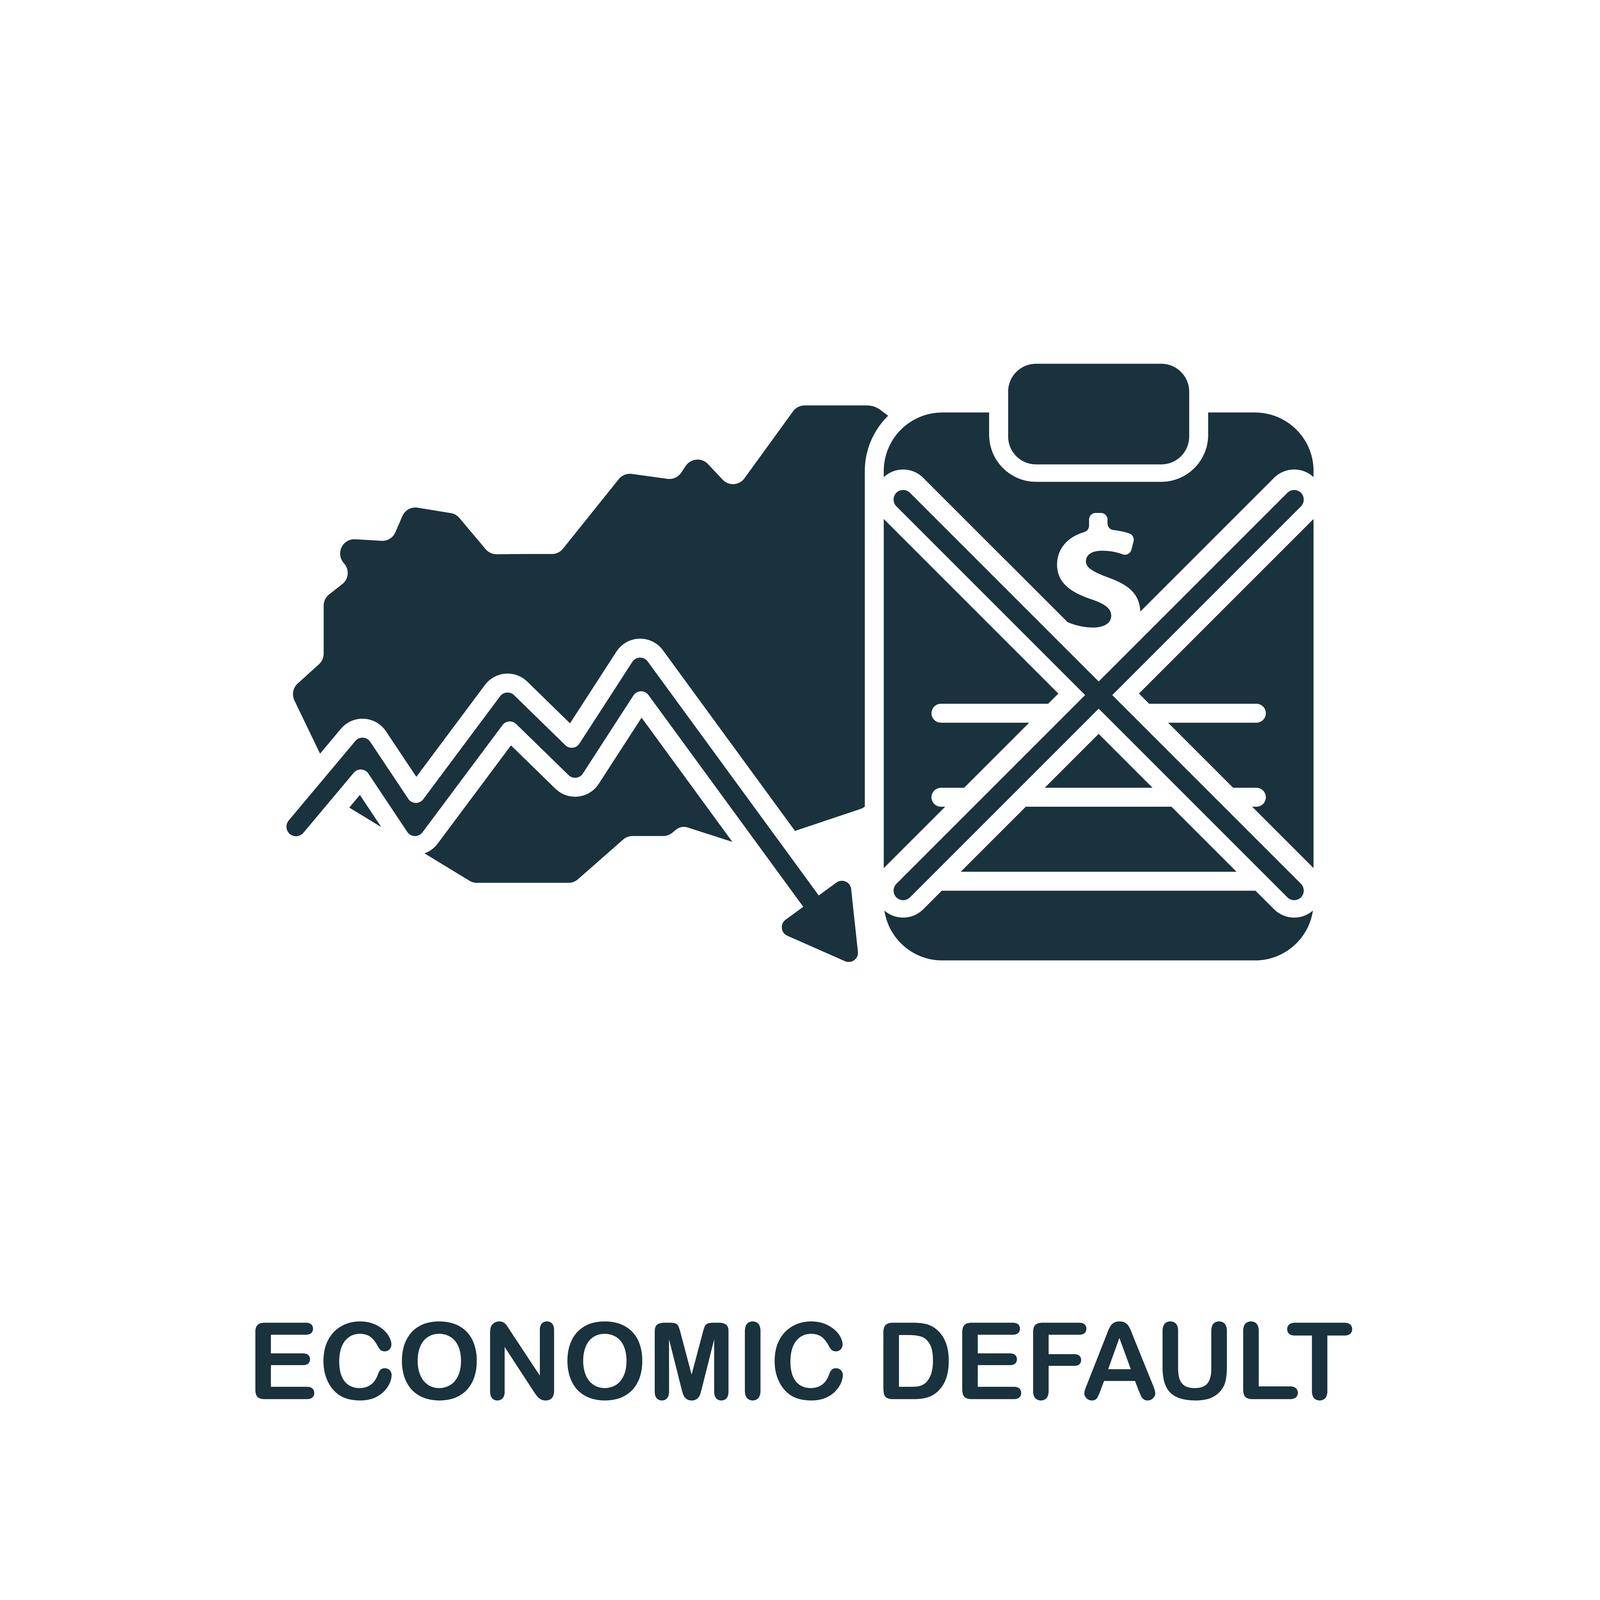 Economic Default icon line. Simple element economic crisis symbol for templates, web design and infographics.